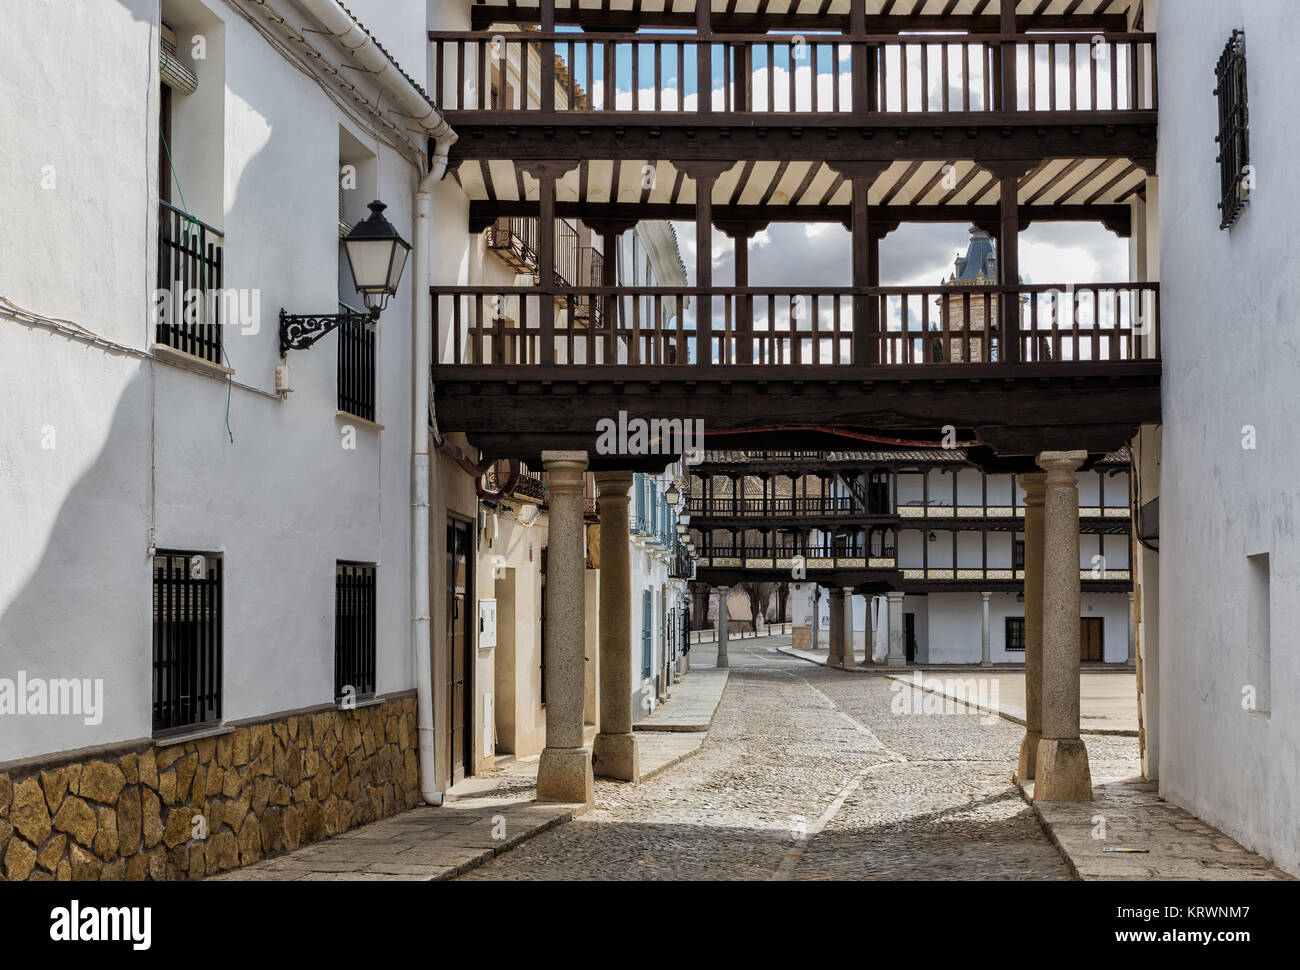 Vue partielle de la place de Tembleque. Cette place est typique de l'architecture espagnole. Toledo. L'Espagne. Banque D'Images